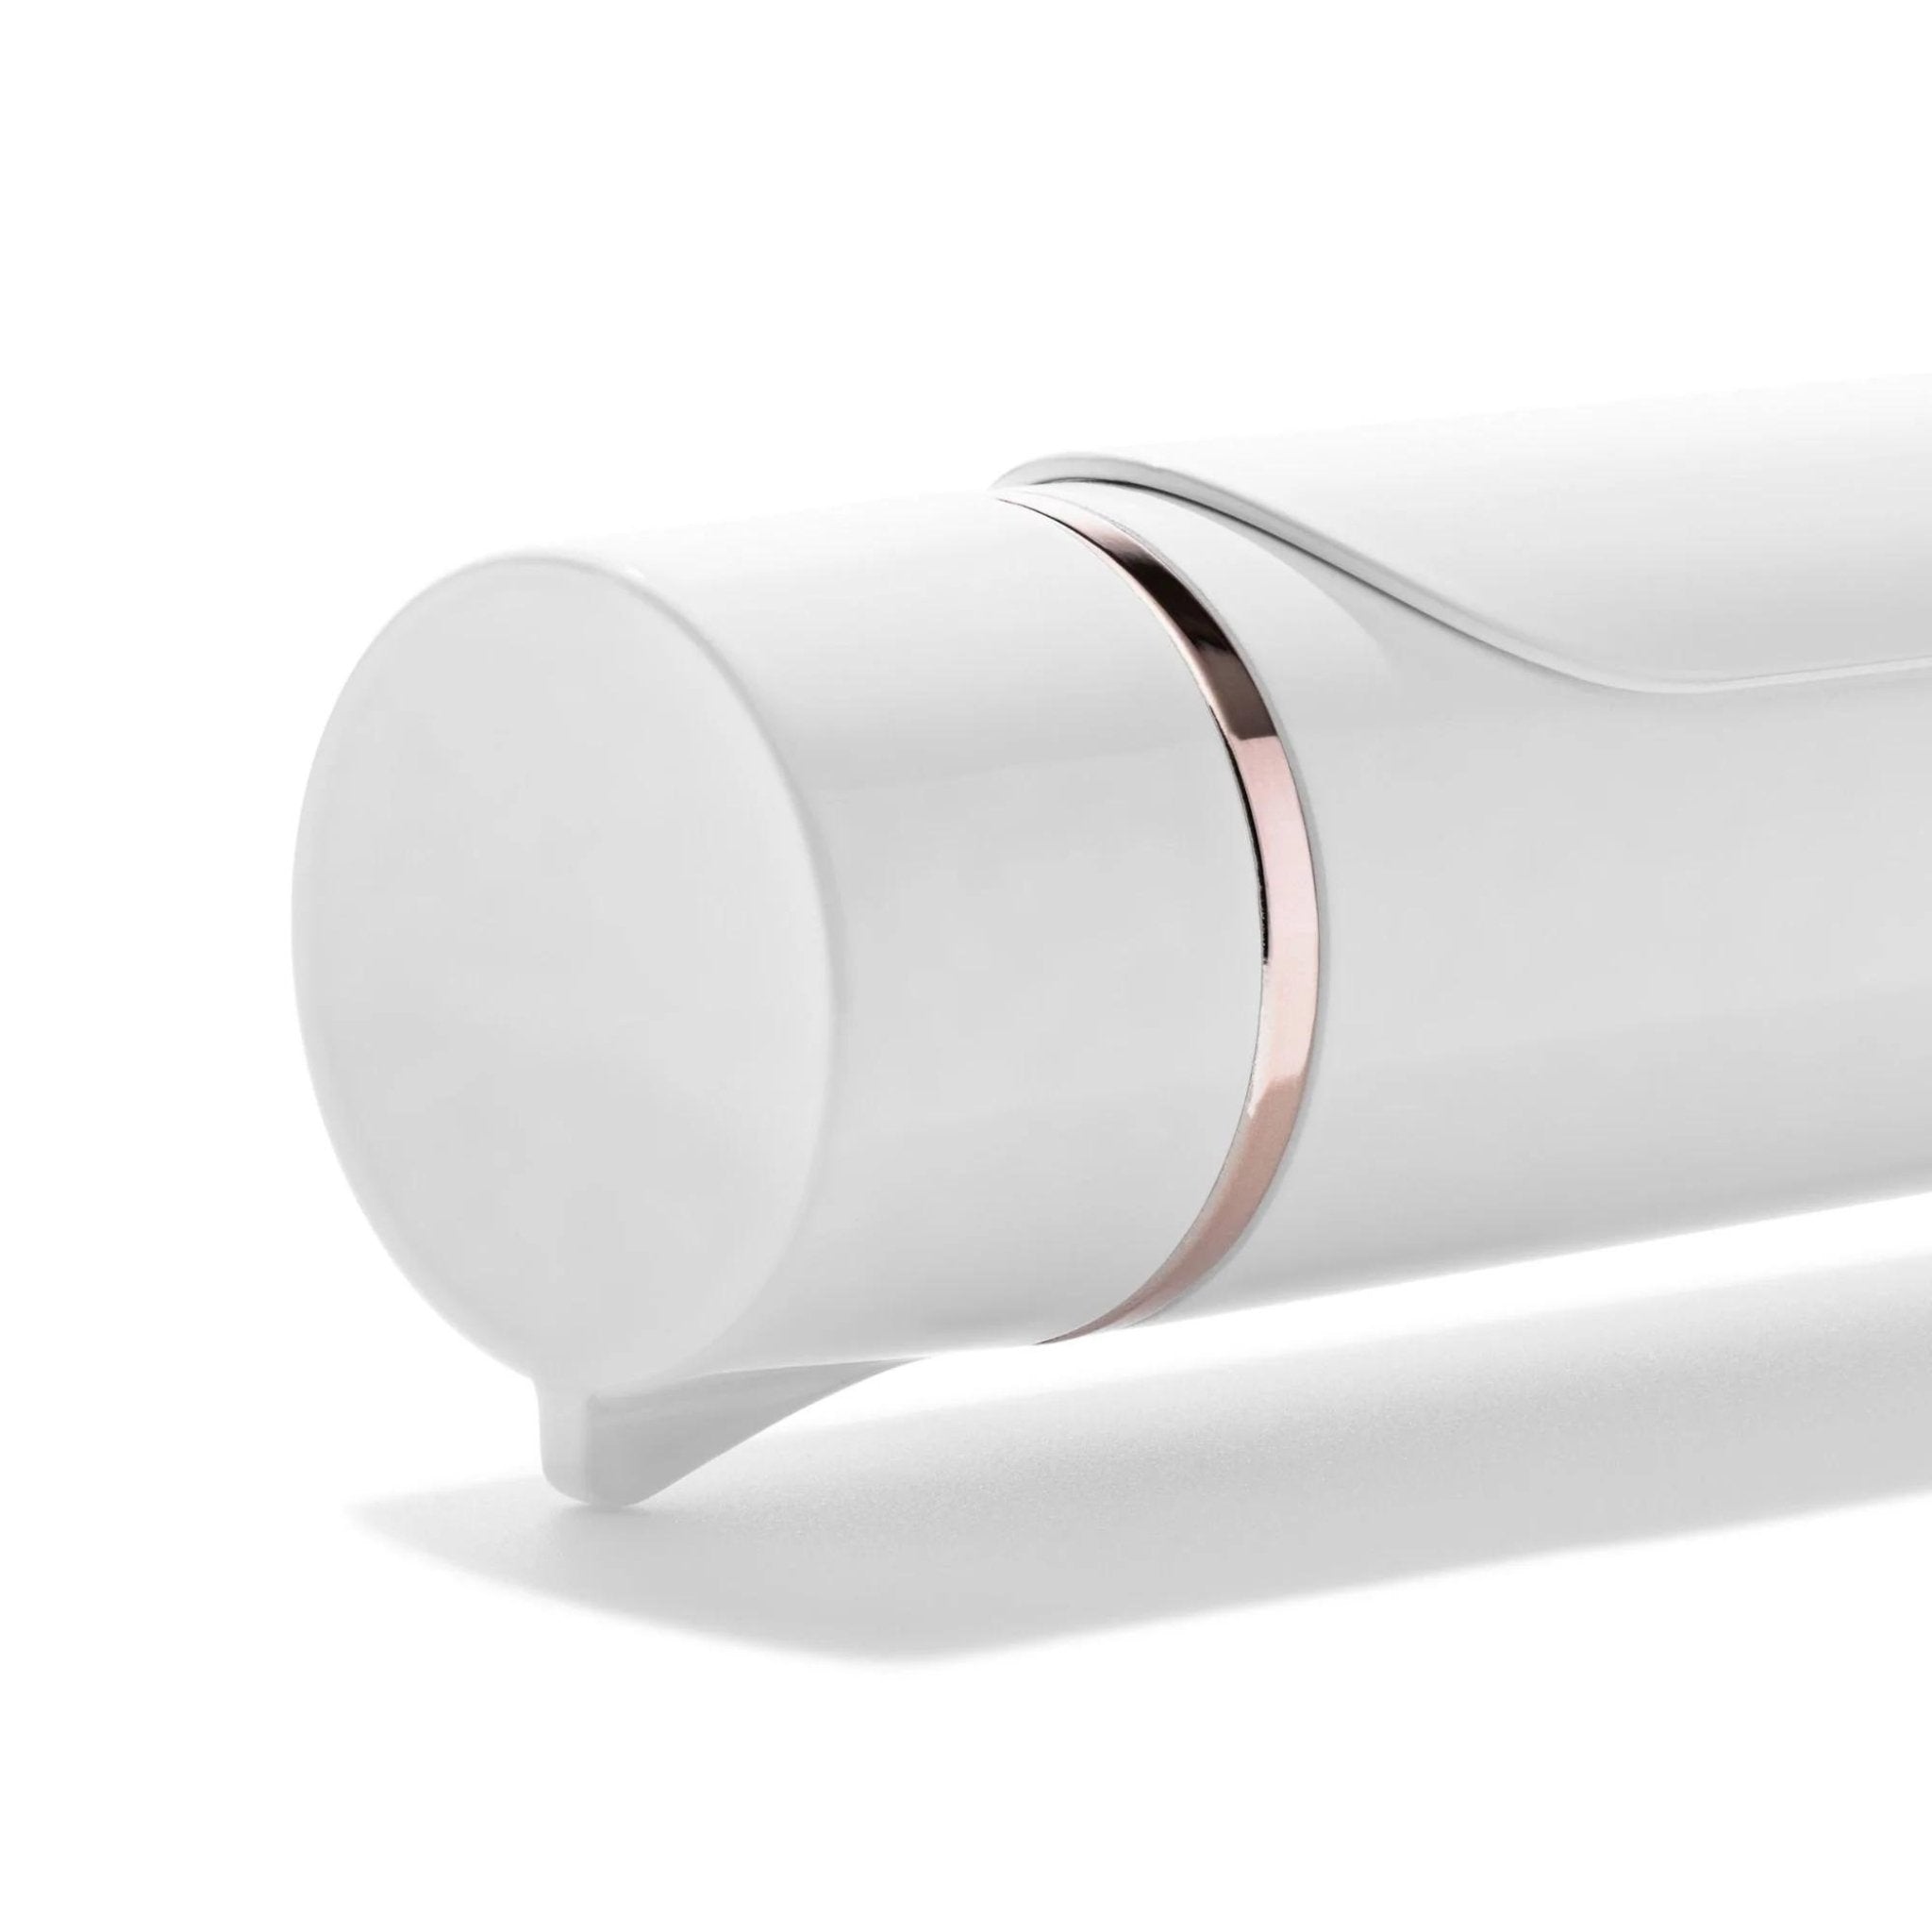 Fer a Friser avec Pince SinglePass Curl Blanc - 1.25 po - Concept C. Shop